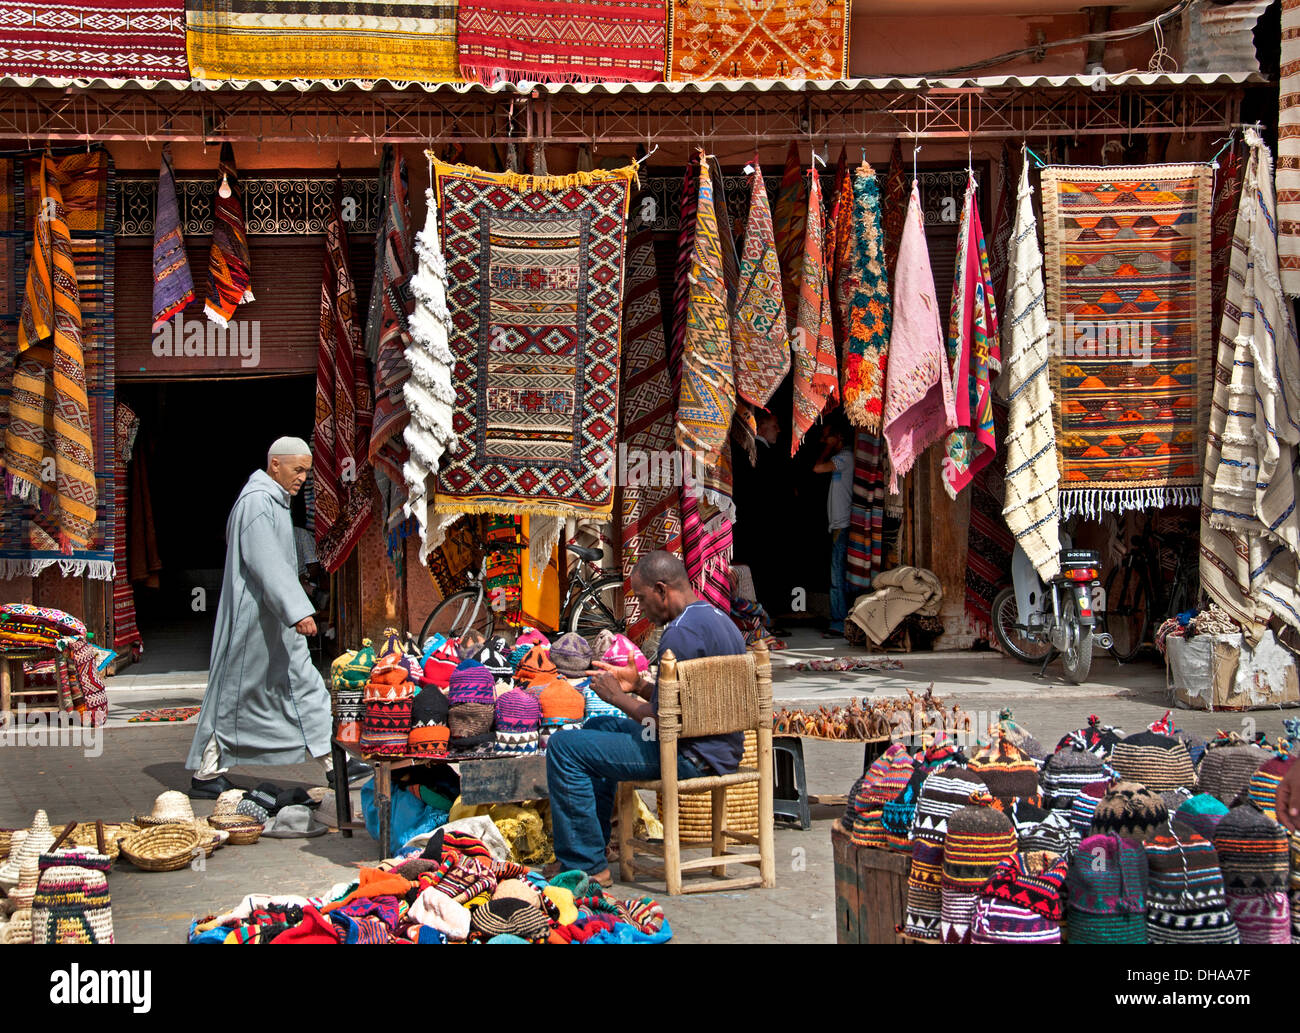 Vieux marché aux épices du souk de Marrakech Maroc Medina Shop Banque D'Images